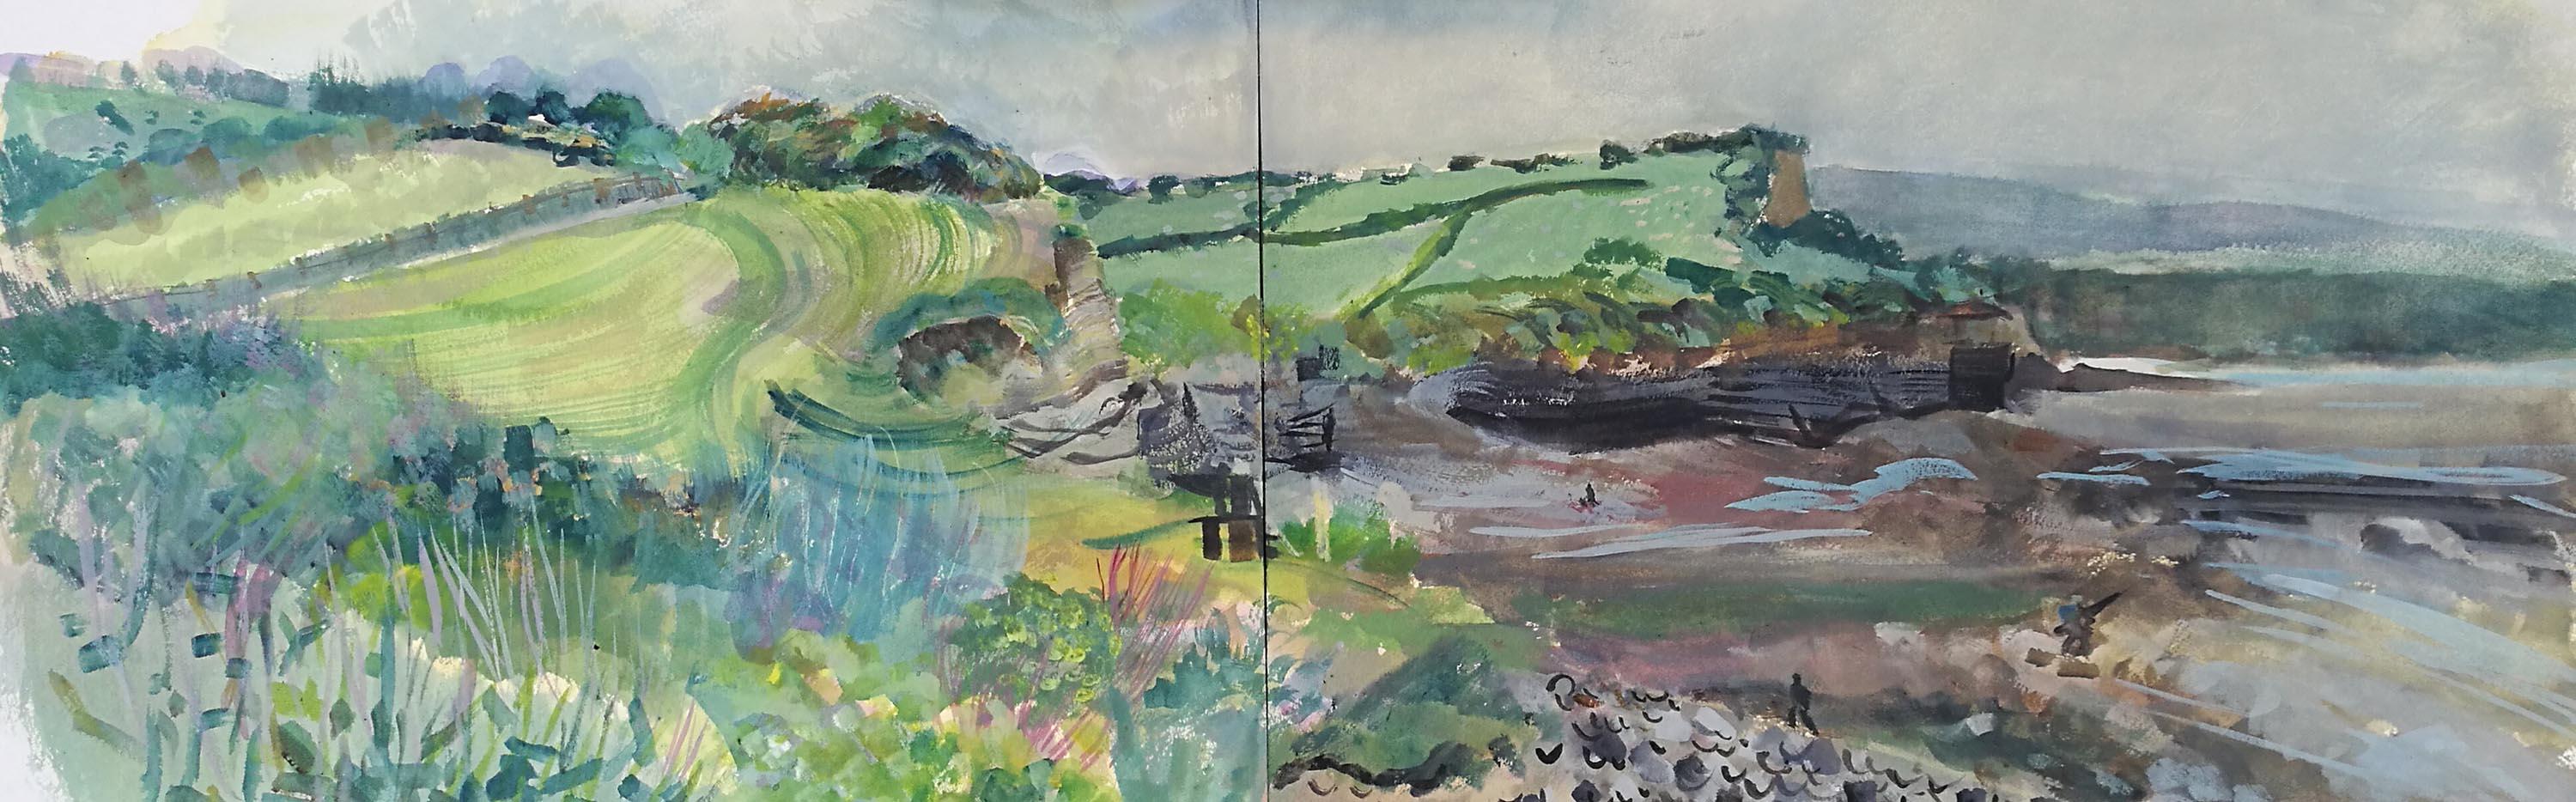 Walkers on Kilve Beach, landscape watercolour, diptych, Lisa Takahashi